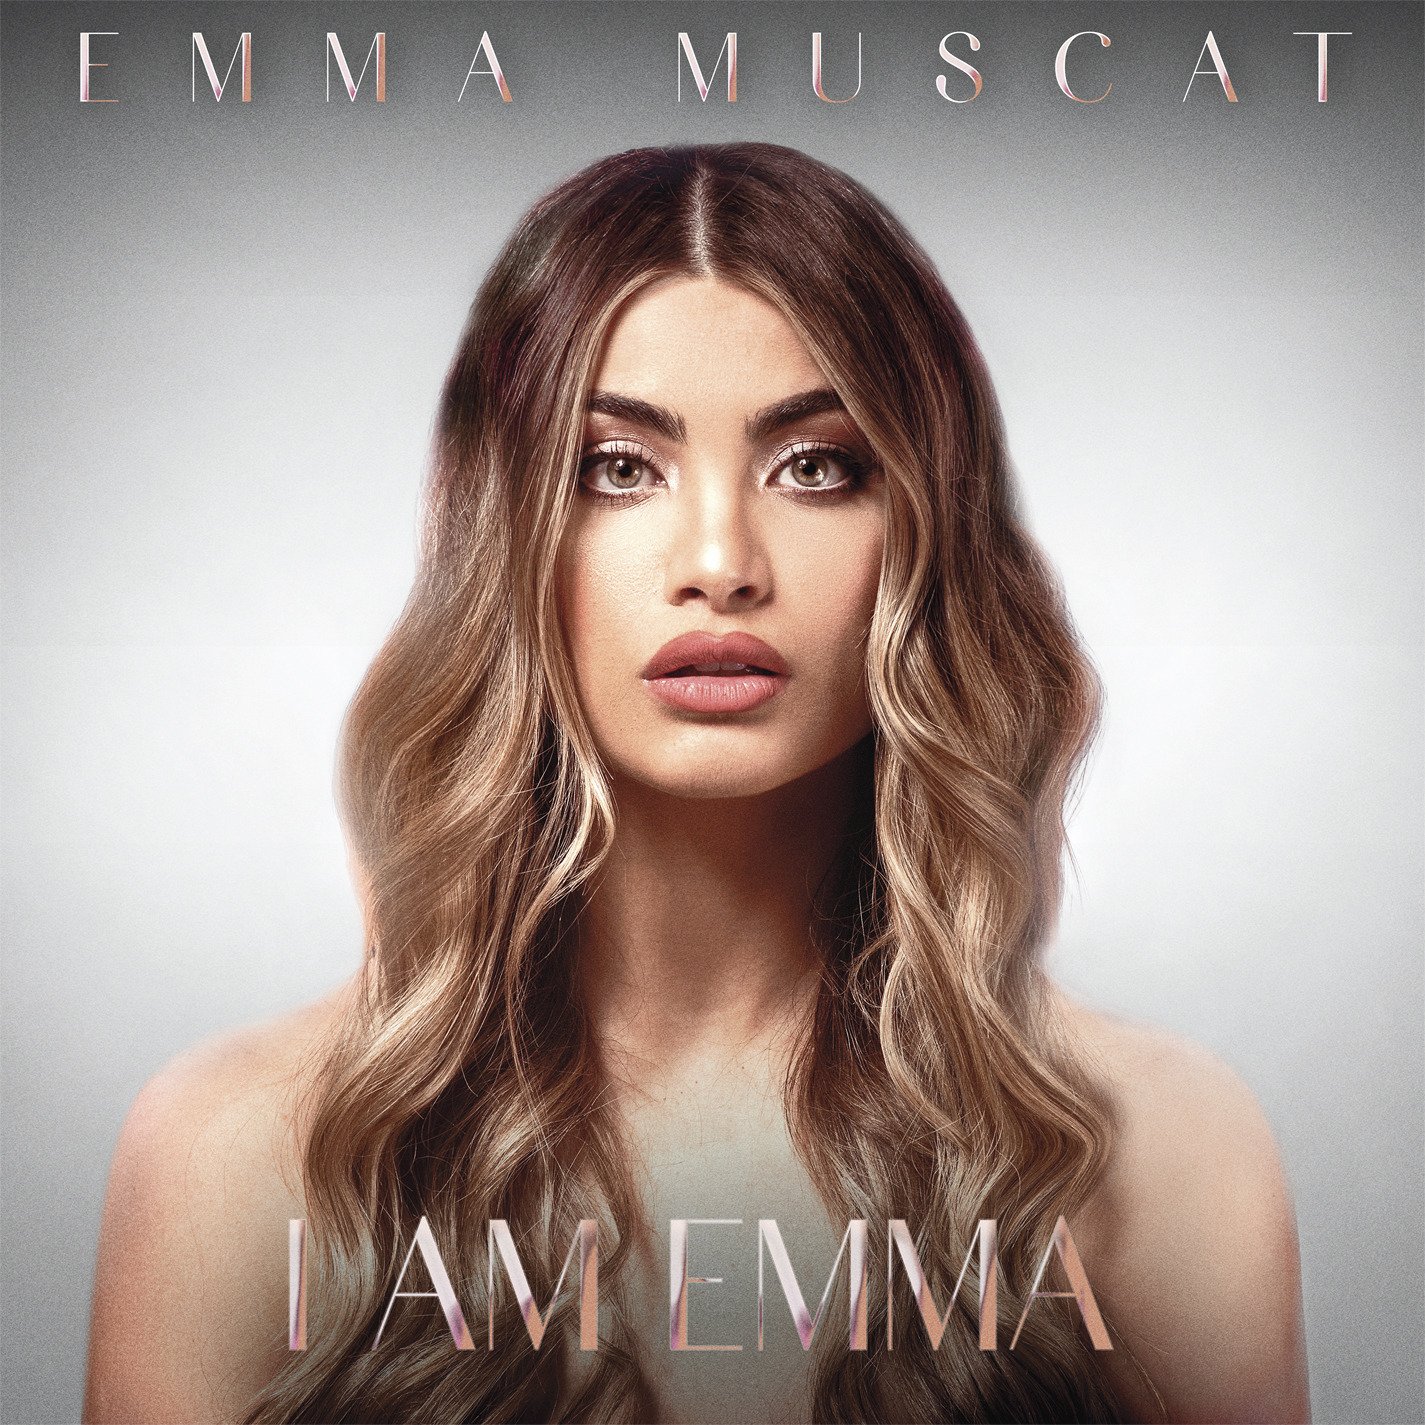 CD Shop - MUSCAT, EMMA I AM EMMA